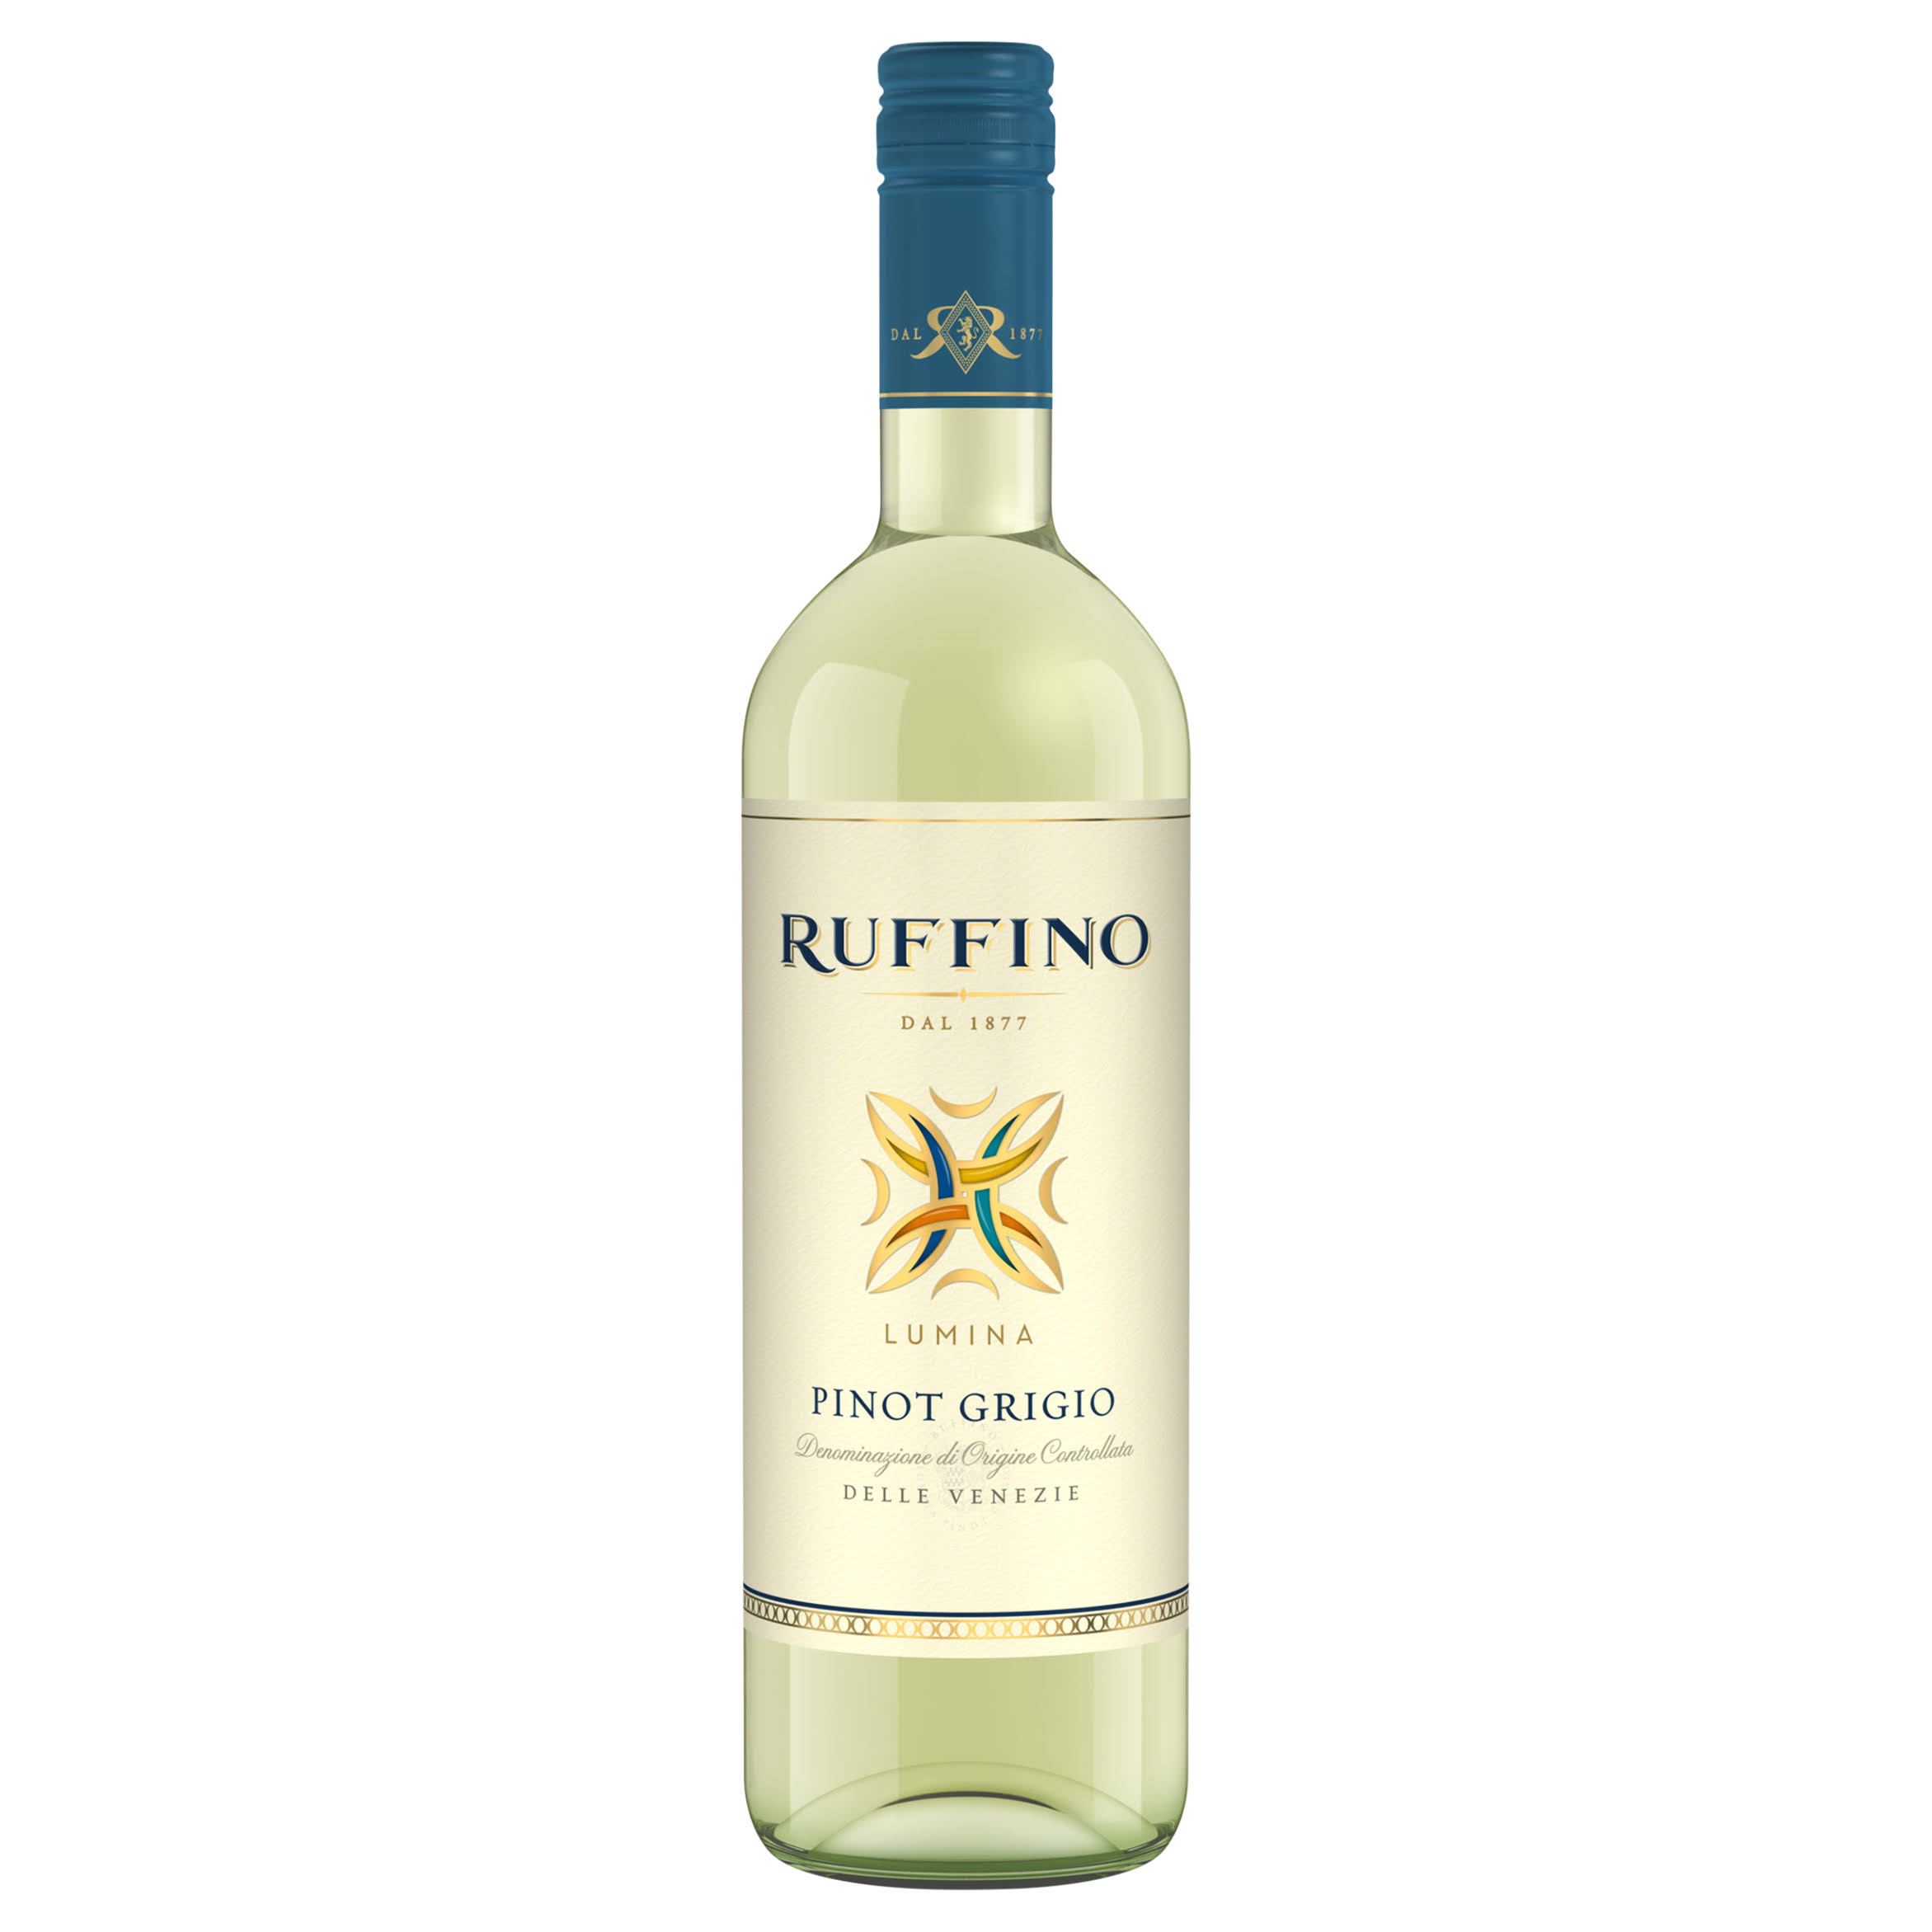 Ruffino Lumina Pinot Grigio - Italy